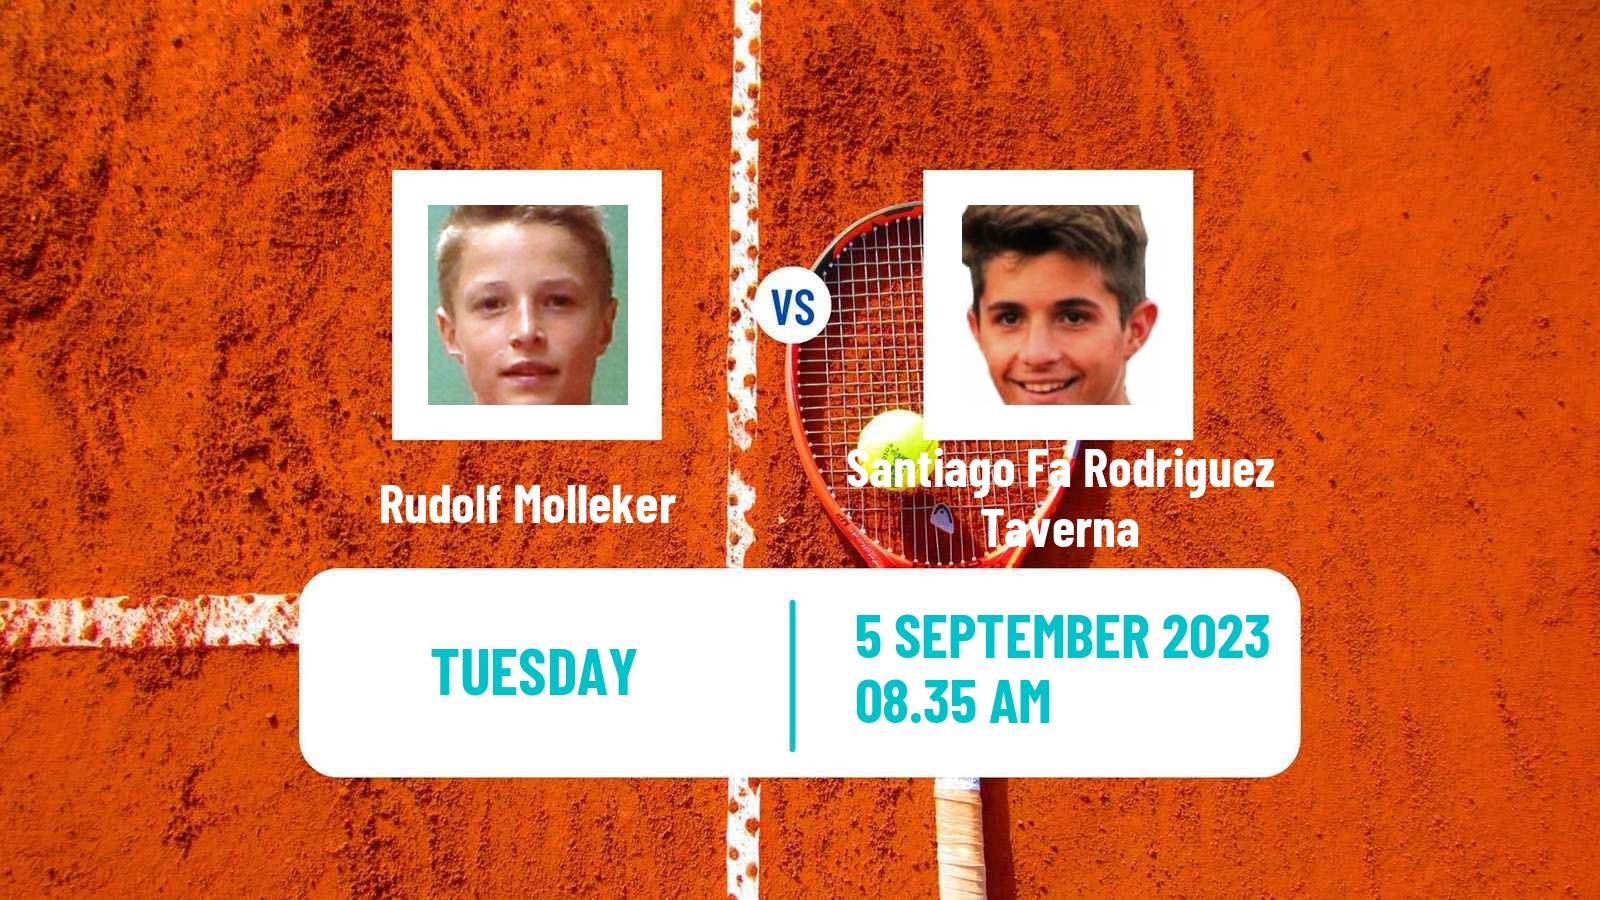 Tennis Tulln Challenger Men Rudolf Molleker - Santiago Fa Rodriguez Taverna